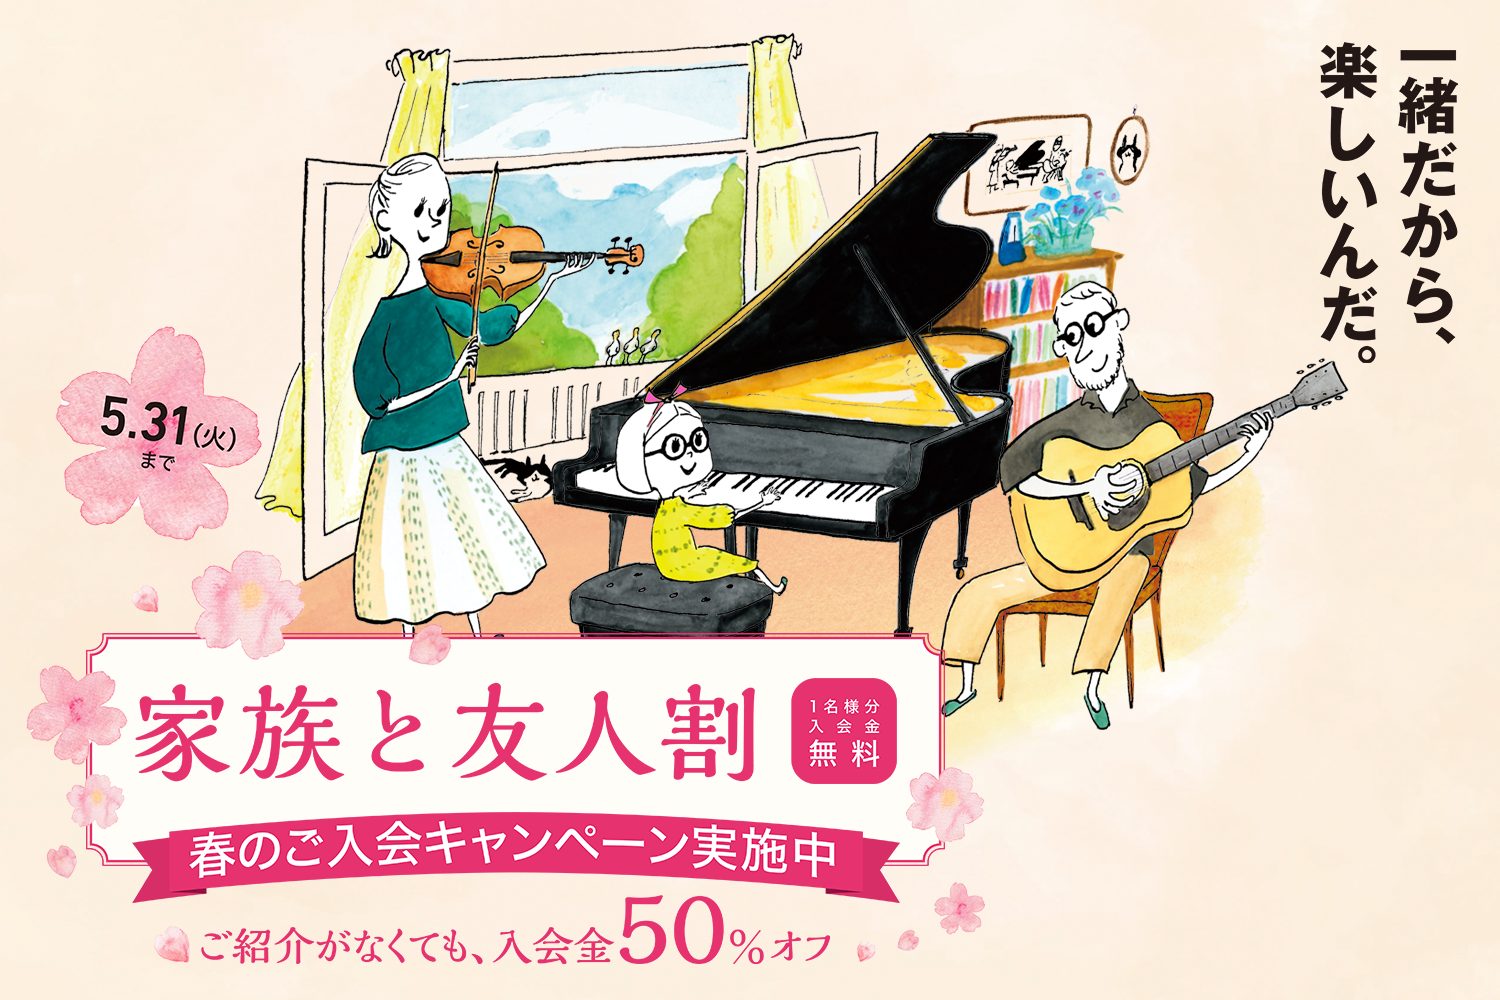 【音楽教室キャンペーン情報】春のご入会キャンペーン